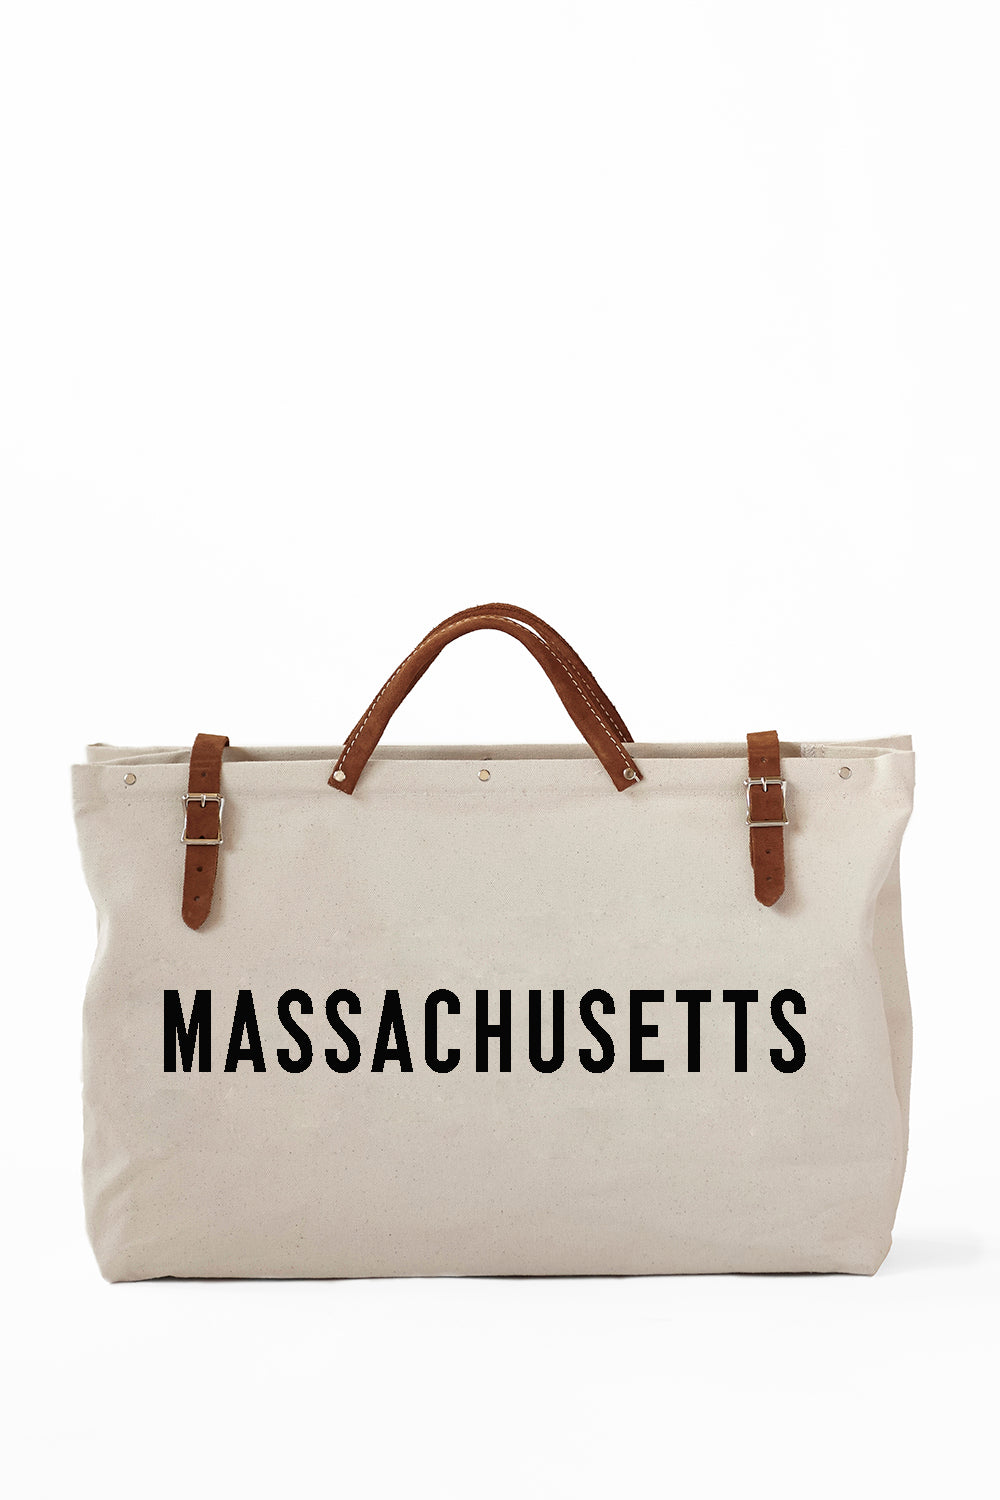 Massachusetts Utility Bag